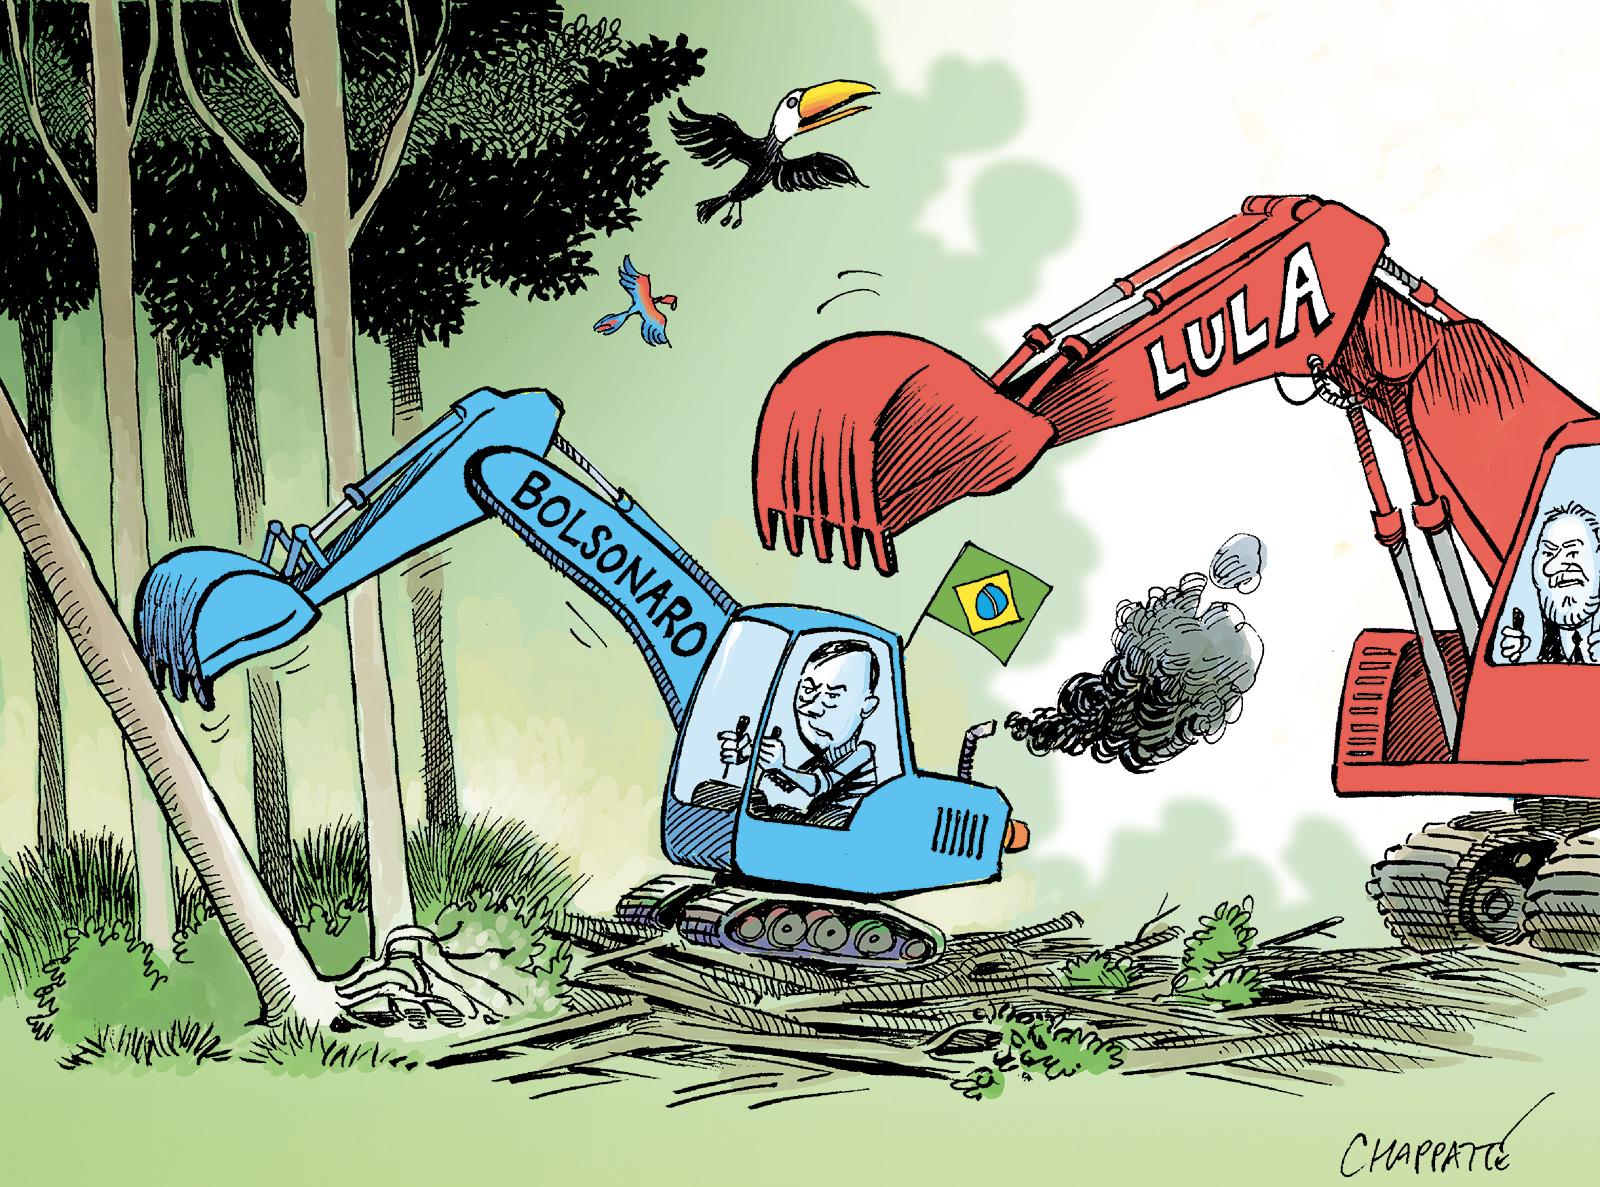 Brésil: Lula revient!